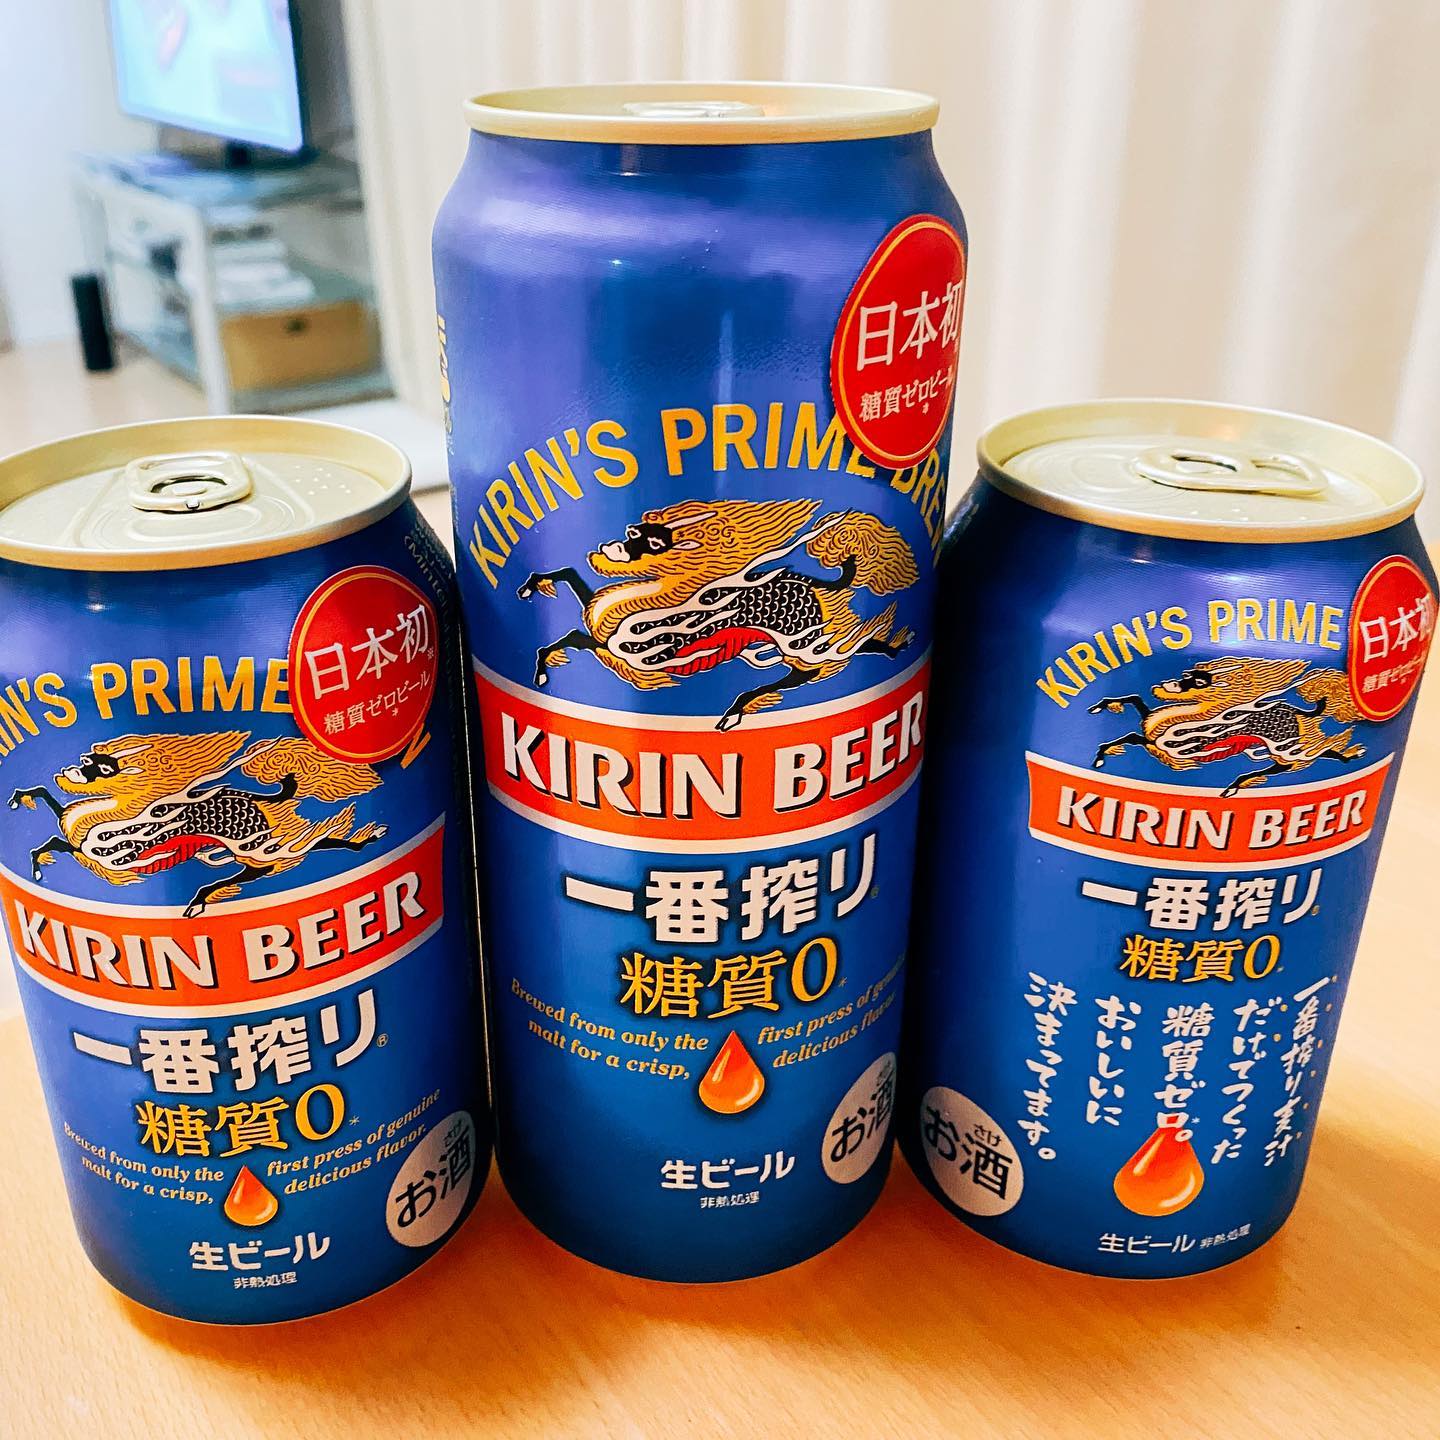 本日発売のキリン一番搾り 糖質ゼロです。ビールなのに糖質ゼロは日本初です。テレワーク後にローソンに買いに行きました。早速、500mlを飲みました。うまい！ #一番搾り糖質ゼロ #日本初の糖質ゼロビール #ビール#キリンビール #一番搾り #晩酌